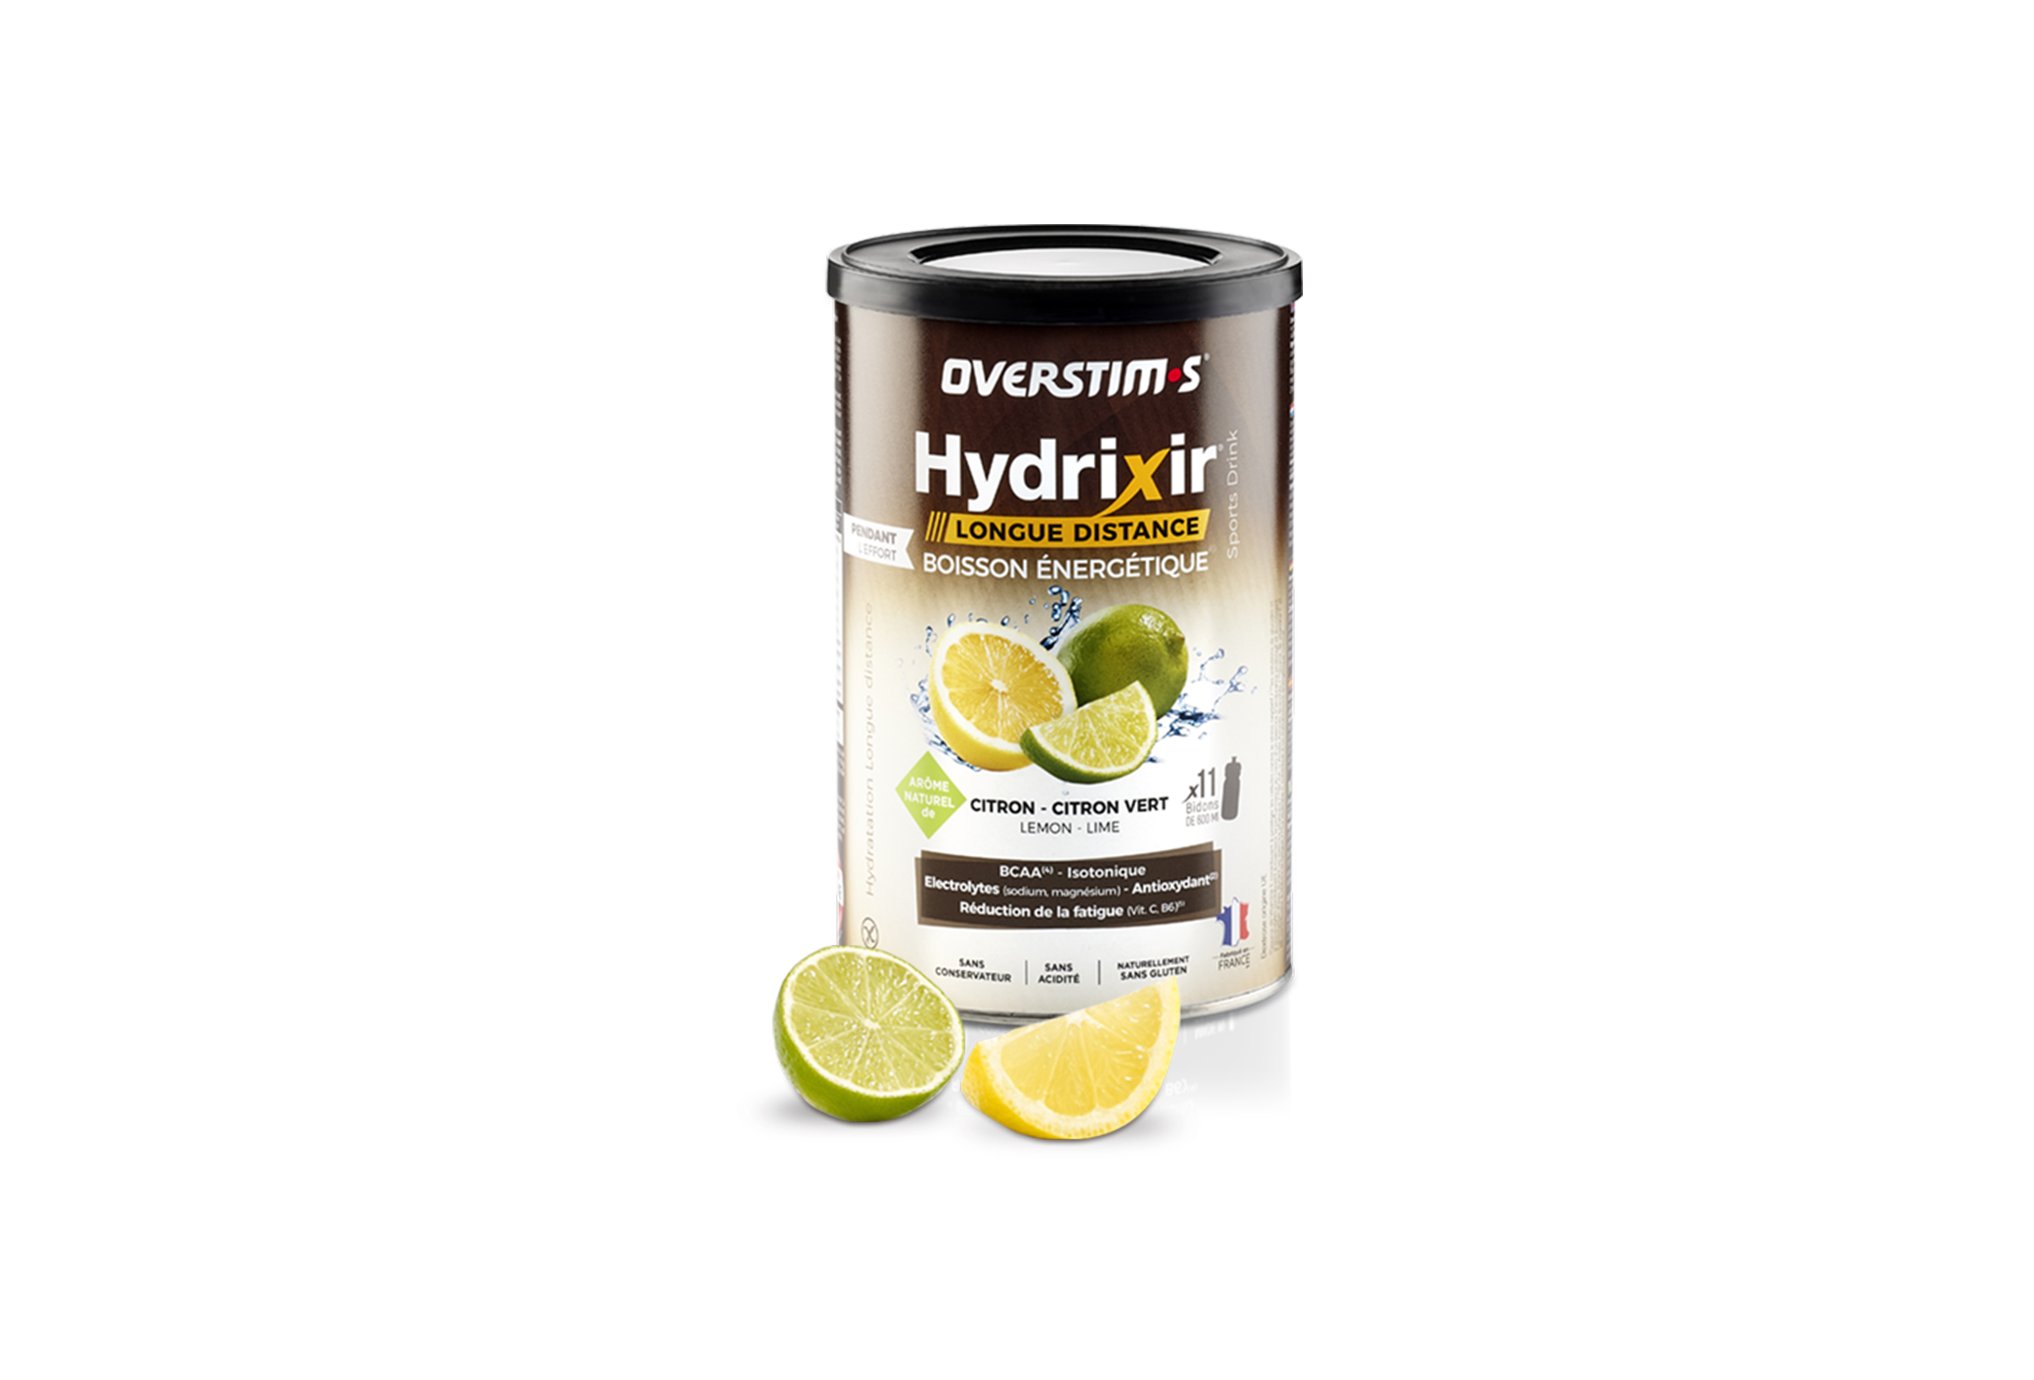 OVERSTIMS Hydrixir Longue Distance 600g - Citron/citron vert Diététique Boissons